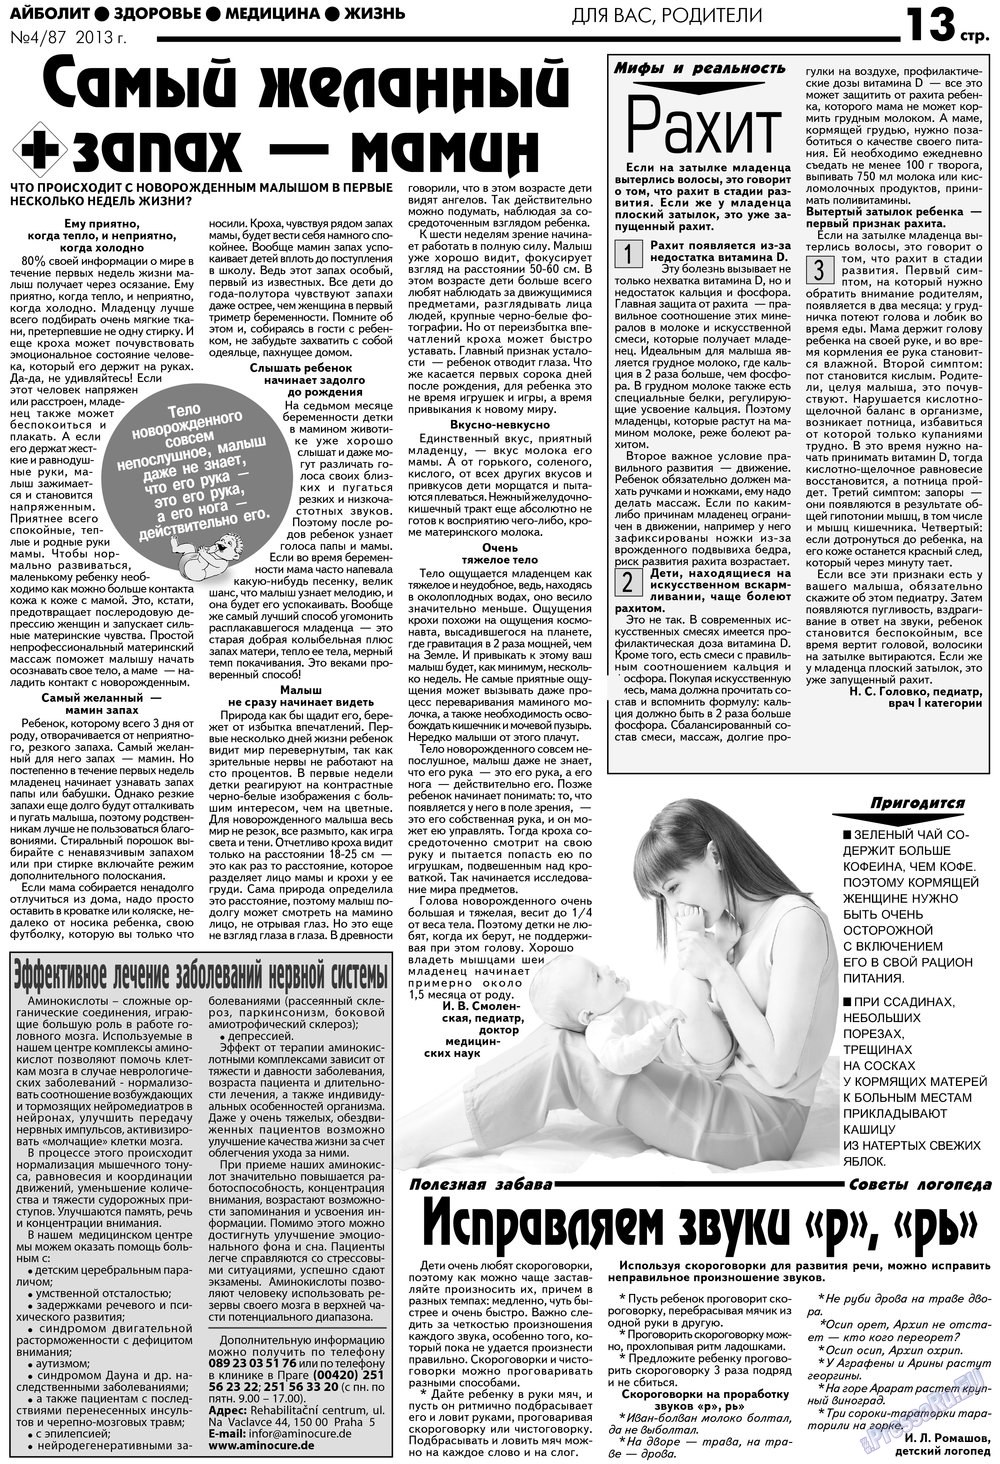 АйБолит, газета. 2013 №4 стр.13